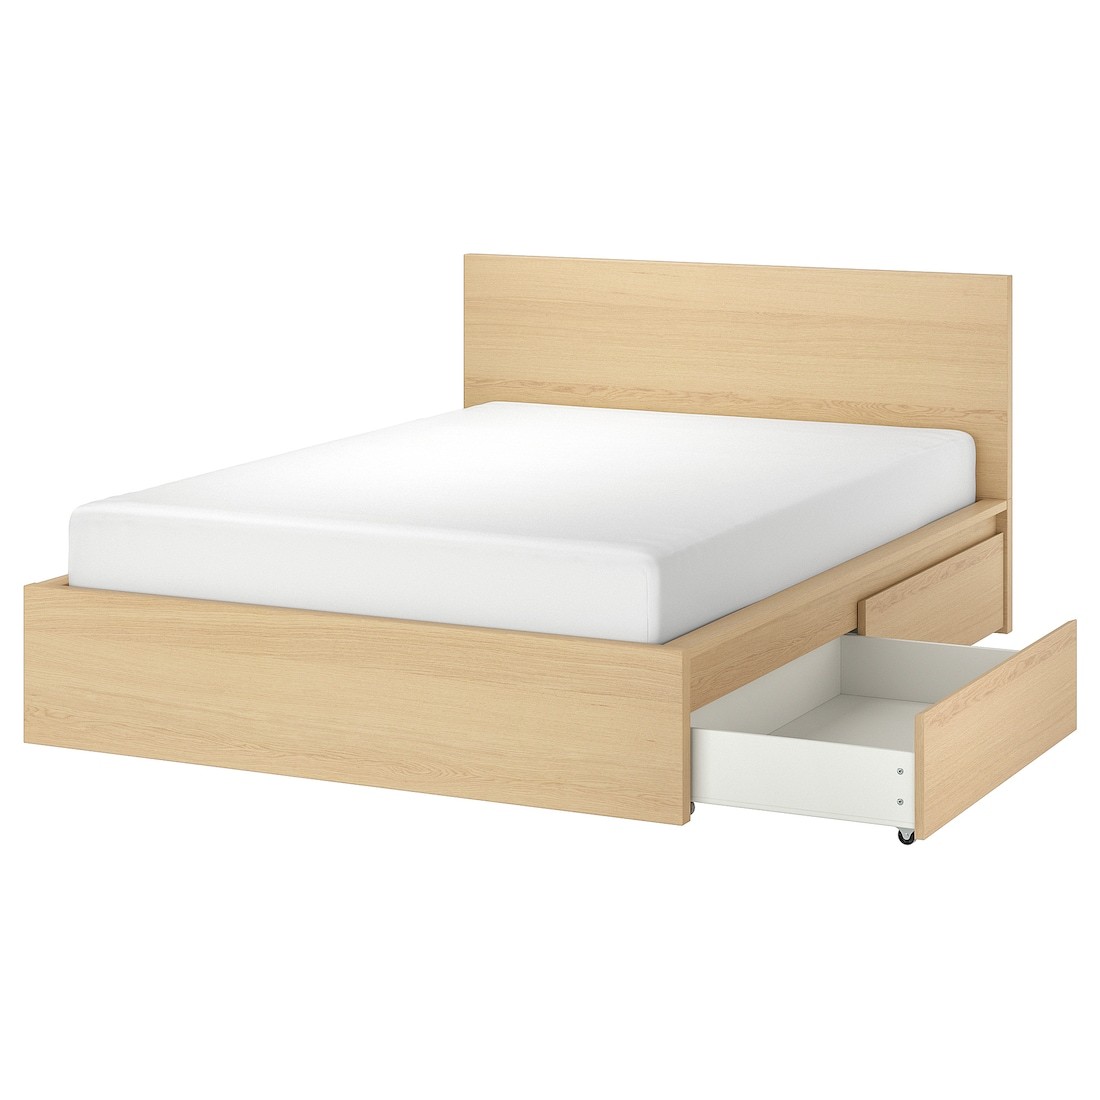 MALM МАЛЬМ Кровать двуспальная с 2 ящиками, дубовый шпон беленый / Luröy, 180x200 см